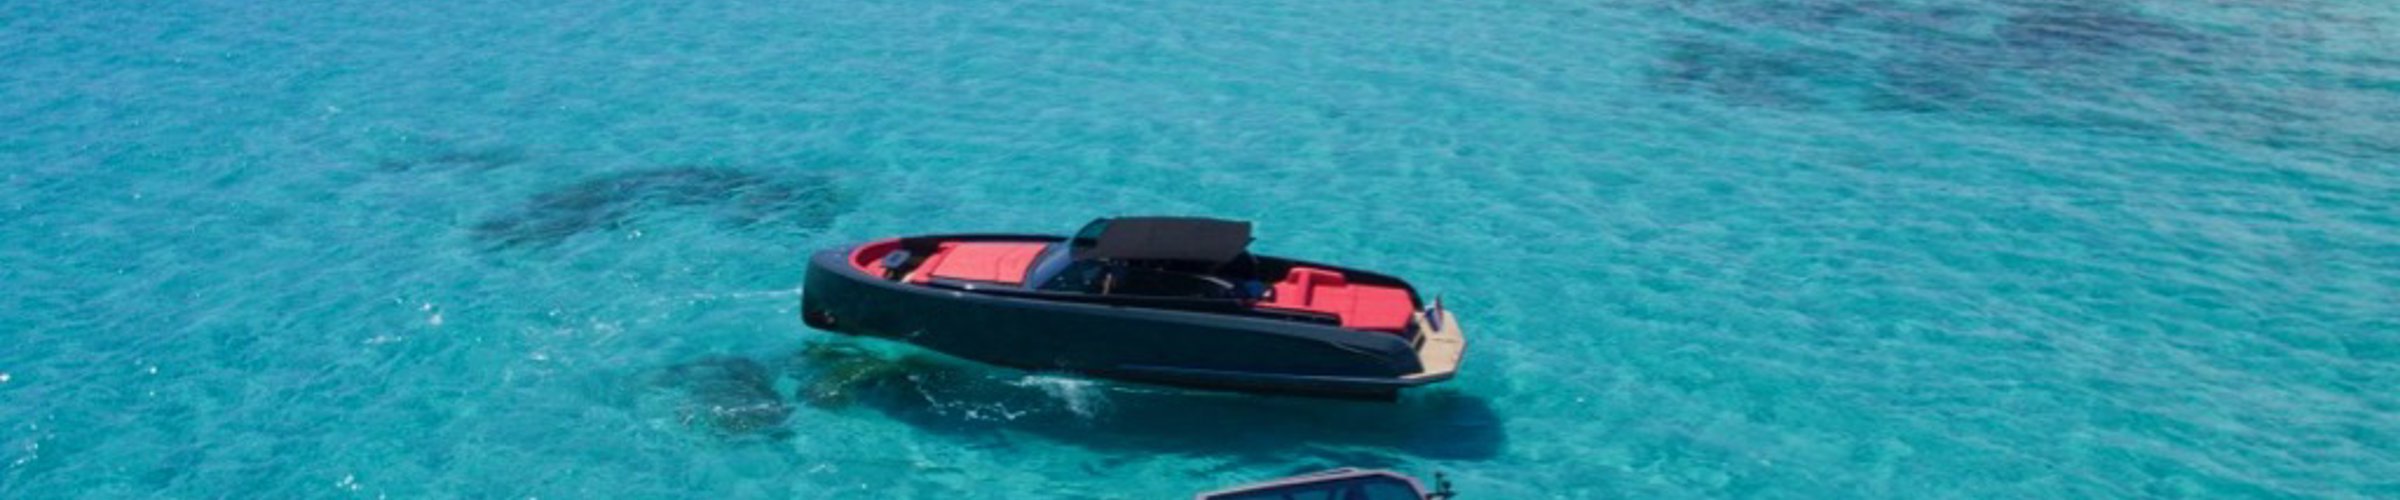 Ibiza boat charters